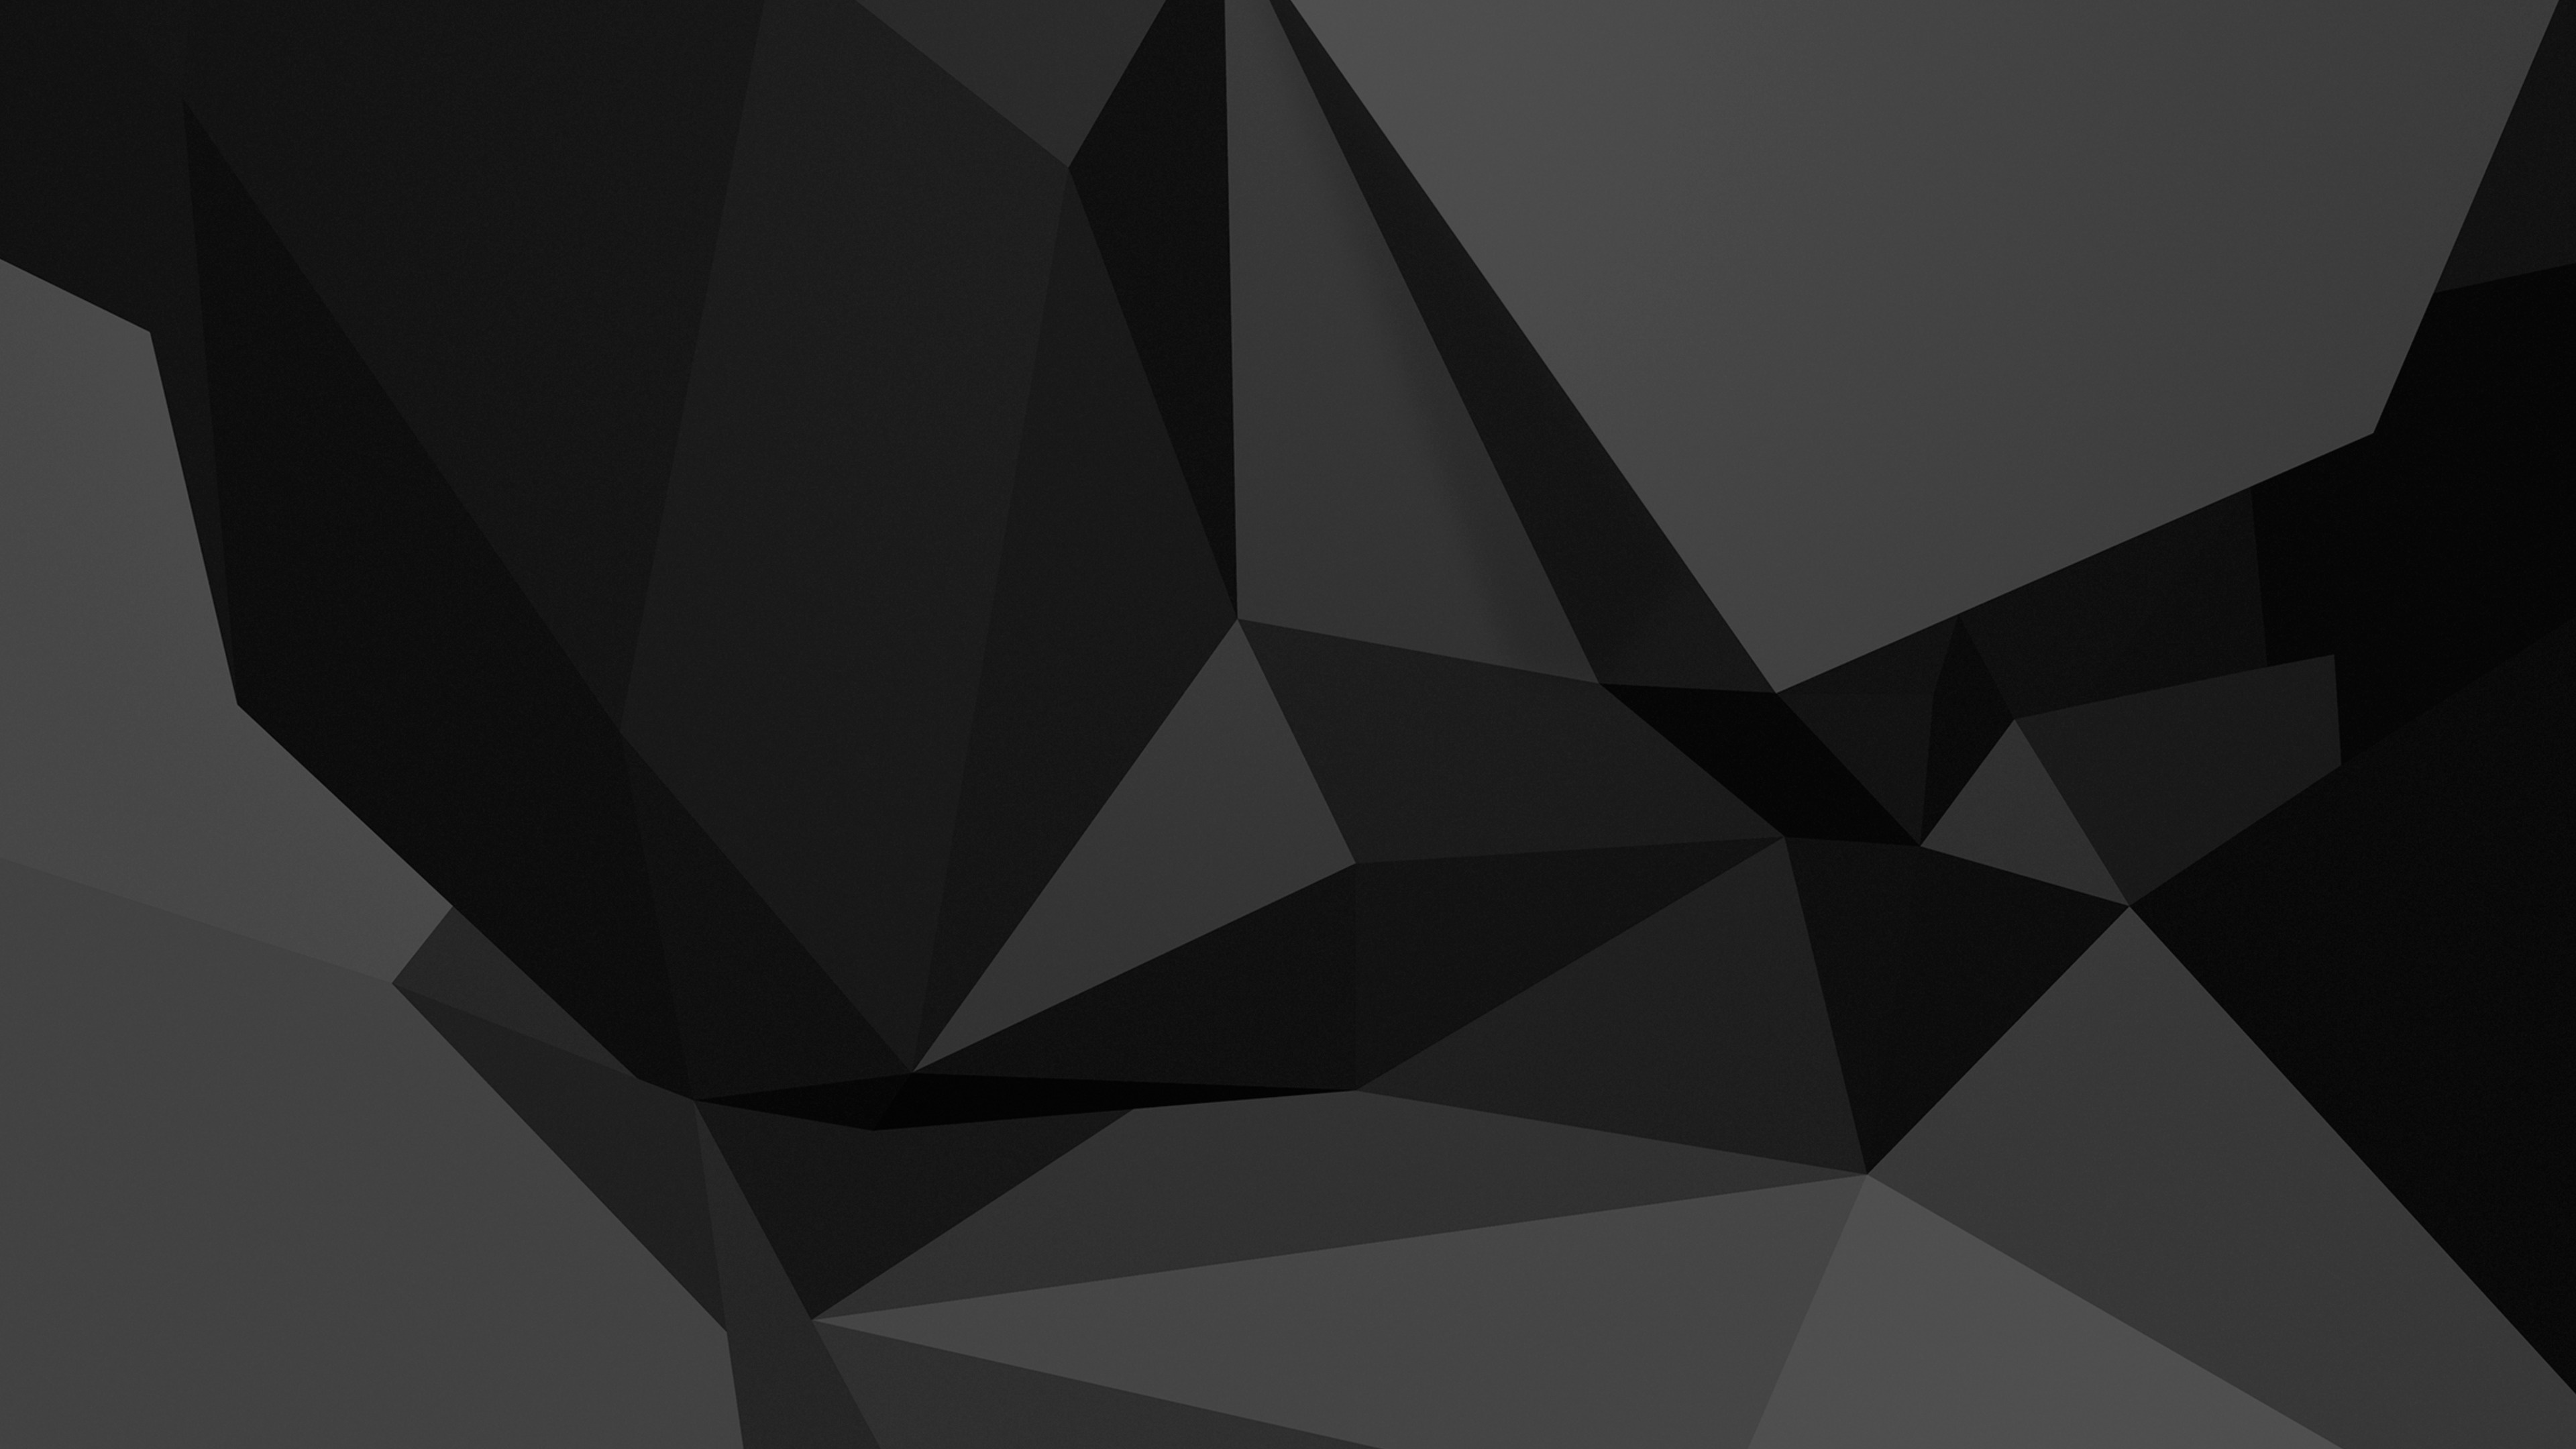 图形处理单元, 黑色的, 3d模拟, 三角形, 对称 壁纸 3840x2160 允许